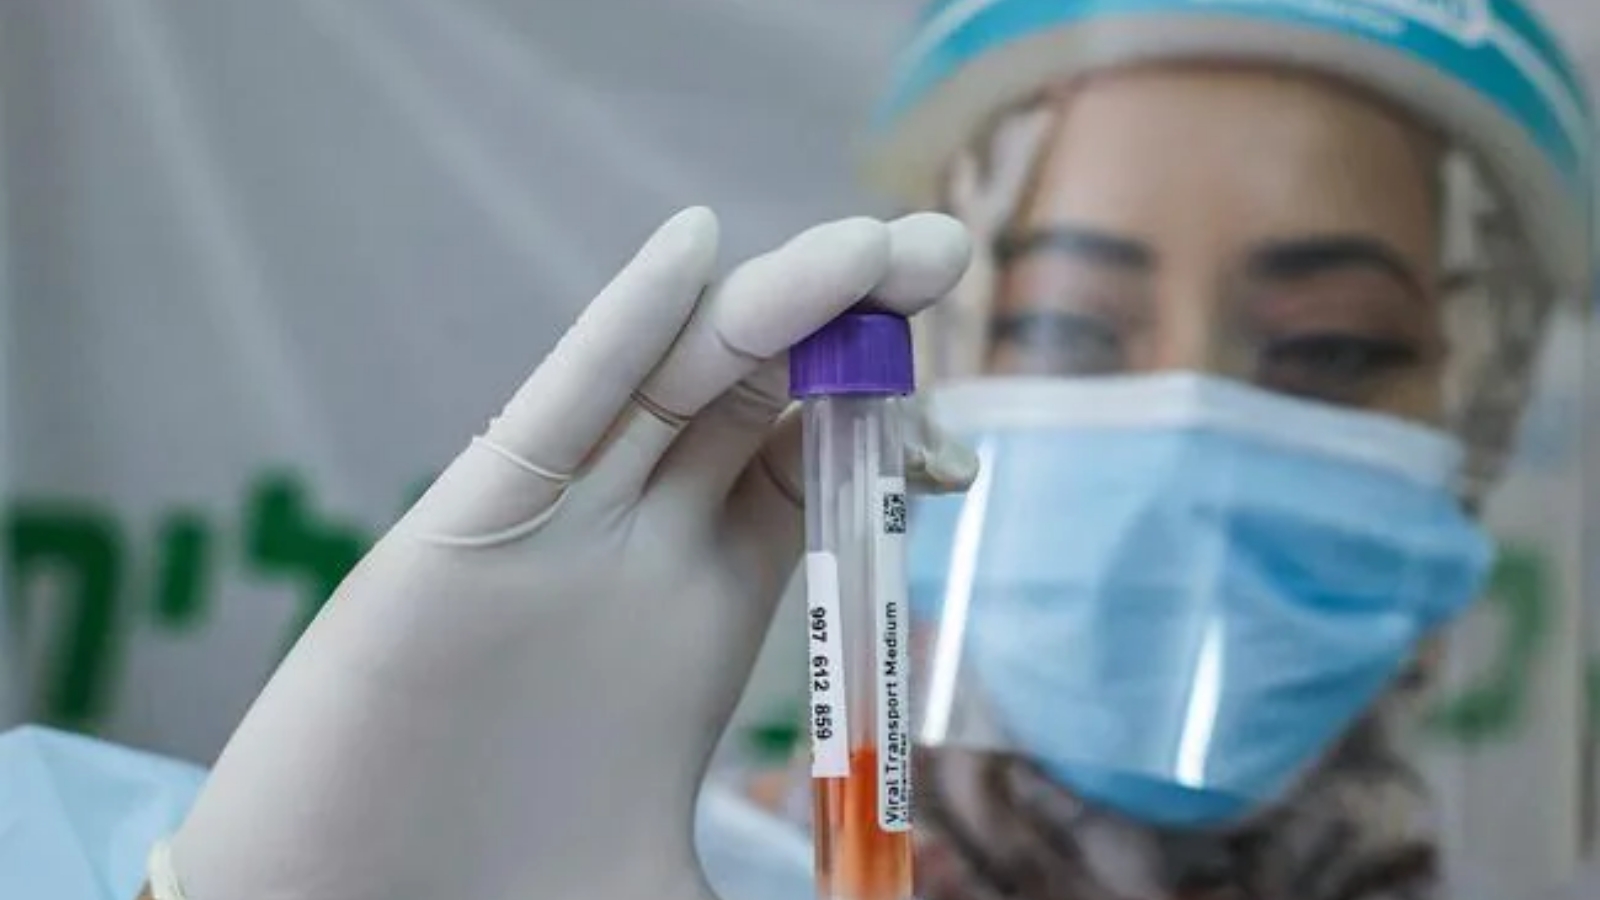 عاملة صحية تحمل عينة من لقاح كوفيد-19 ضمن دراسة لتطوير أدوية جديدة لمحاربة فيروس كورونا.